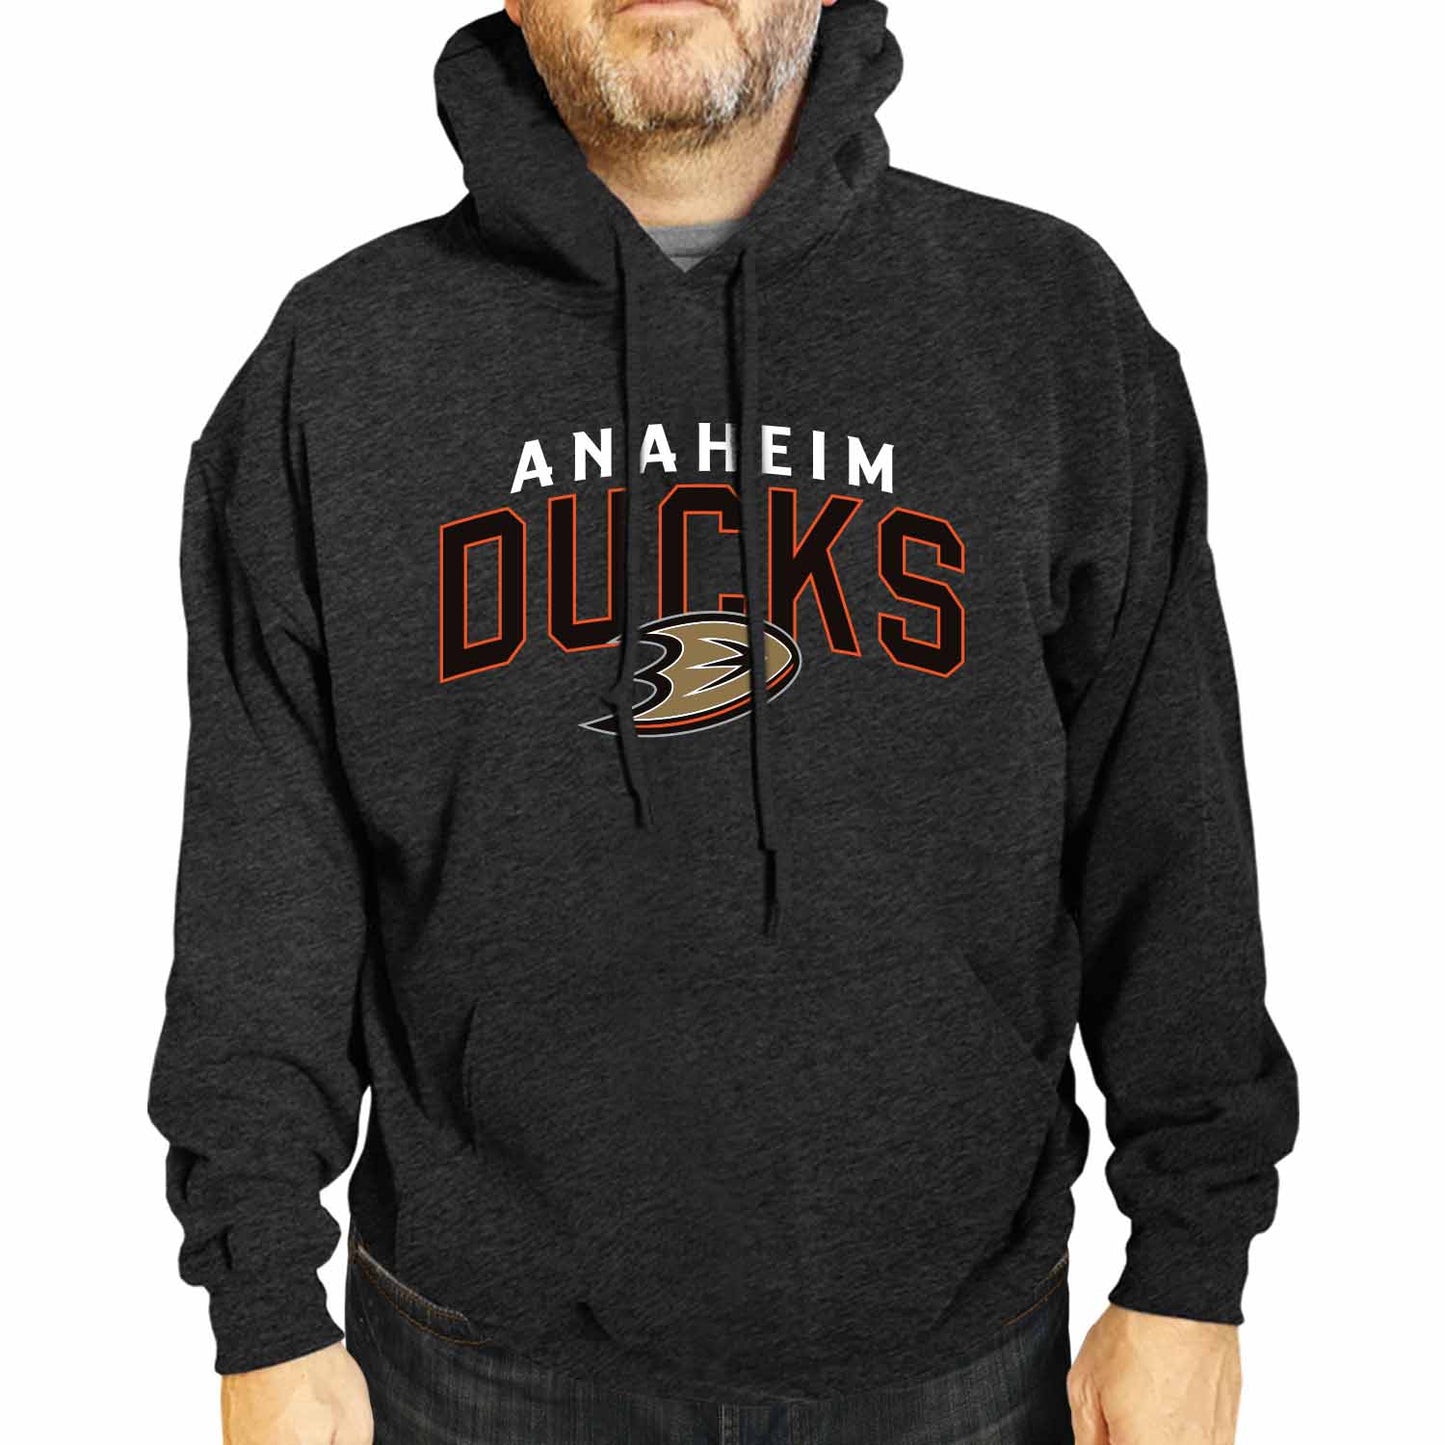 Anaheim Ducks NHL Adult Unisex Powerplay Hooded Sweatshirt - Black Heather